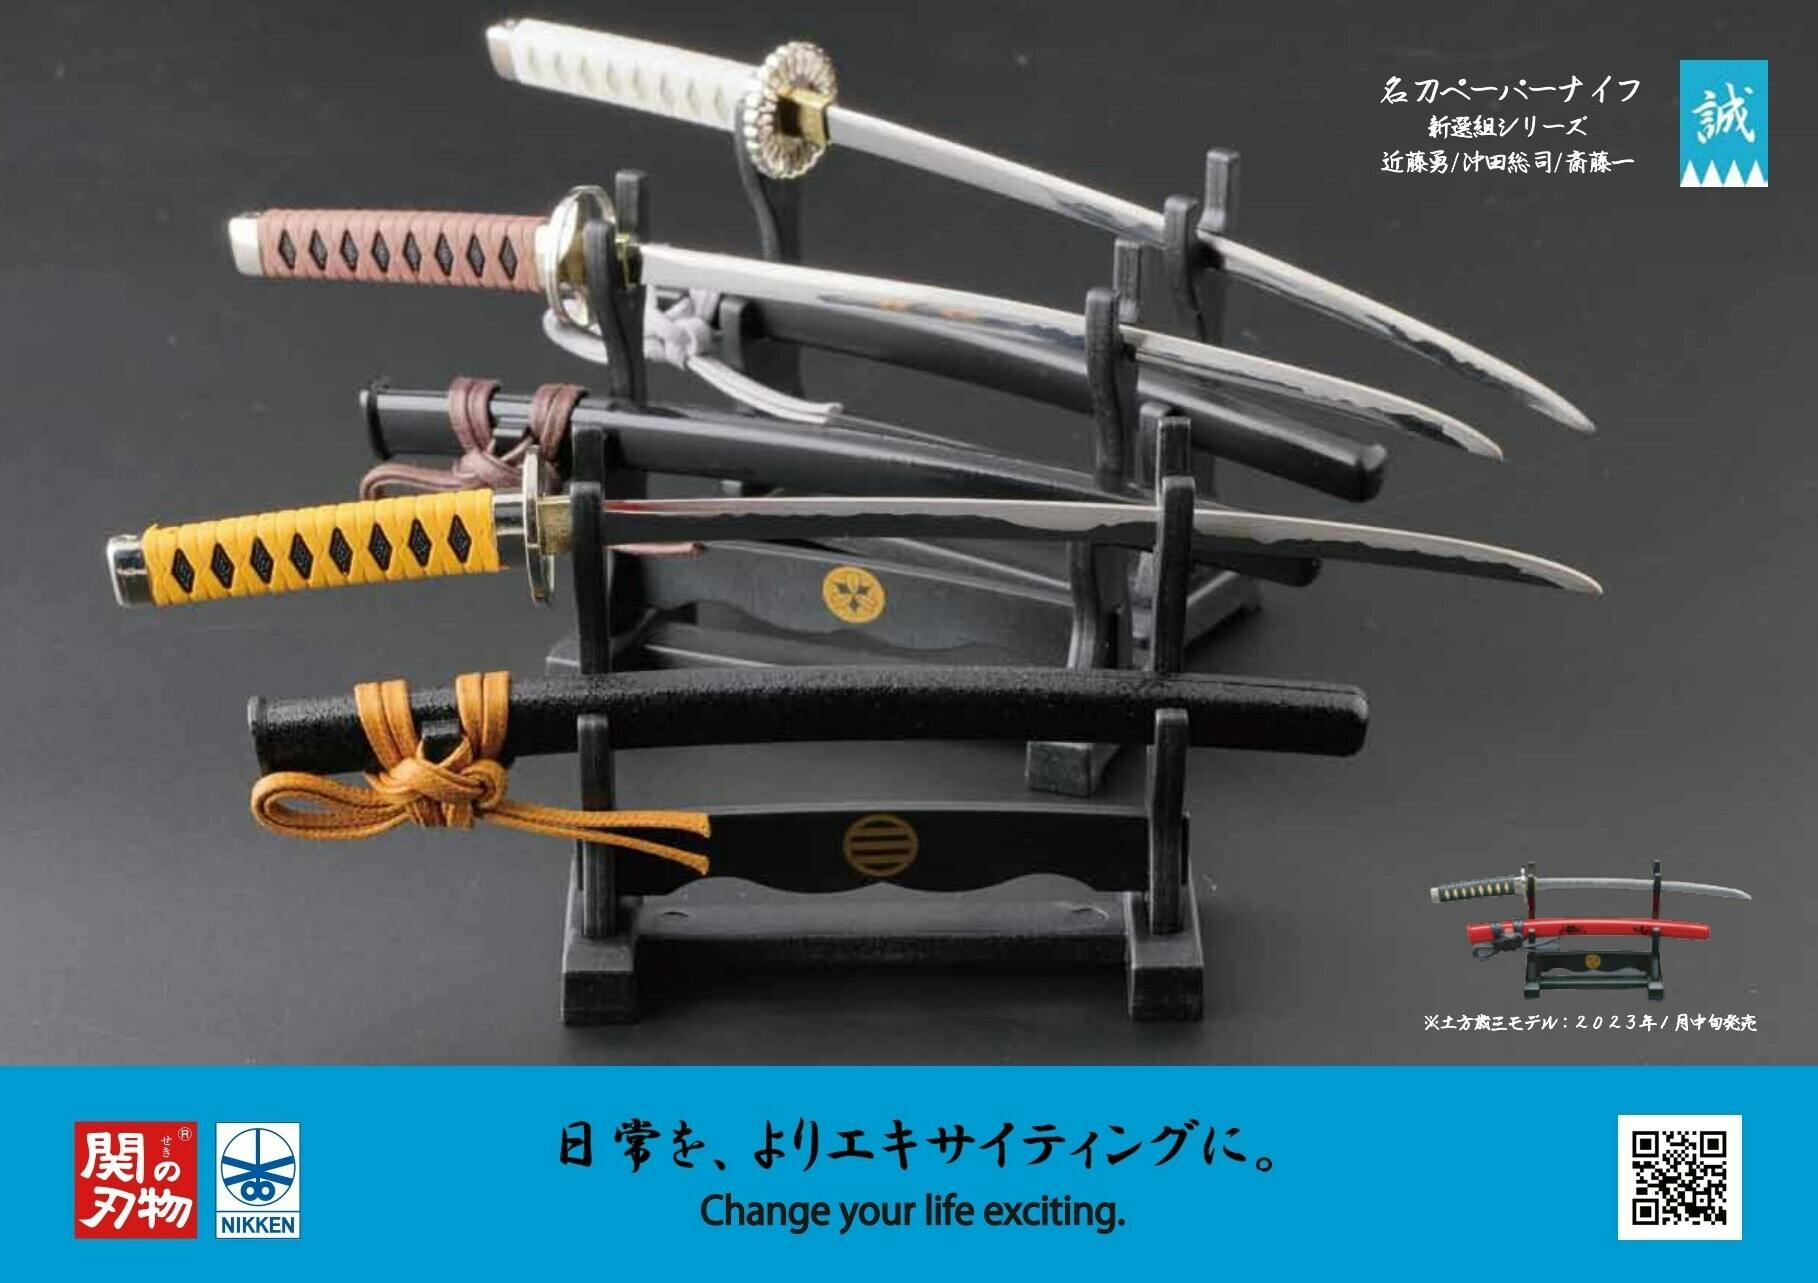 へし切長谷部 福岡市博物館 クリアファイル ペーパーナイフ 2点セット